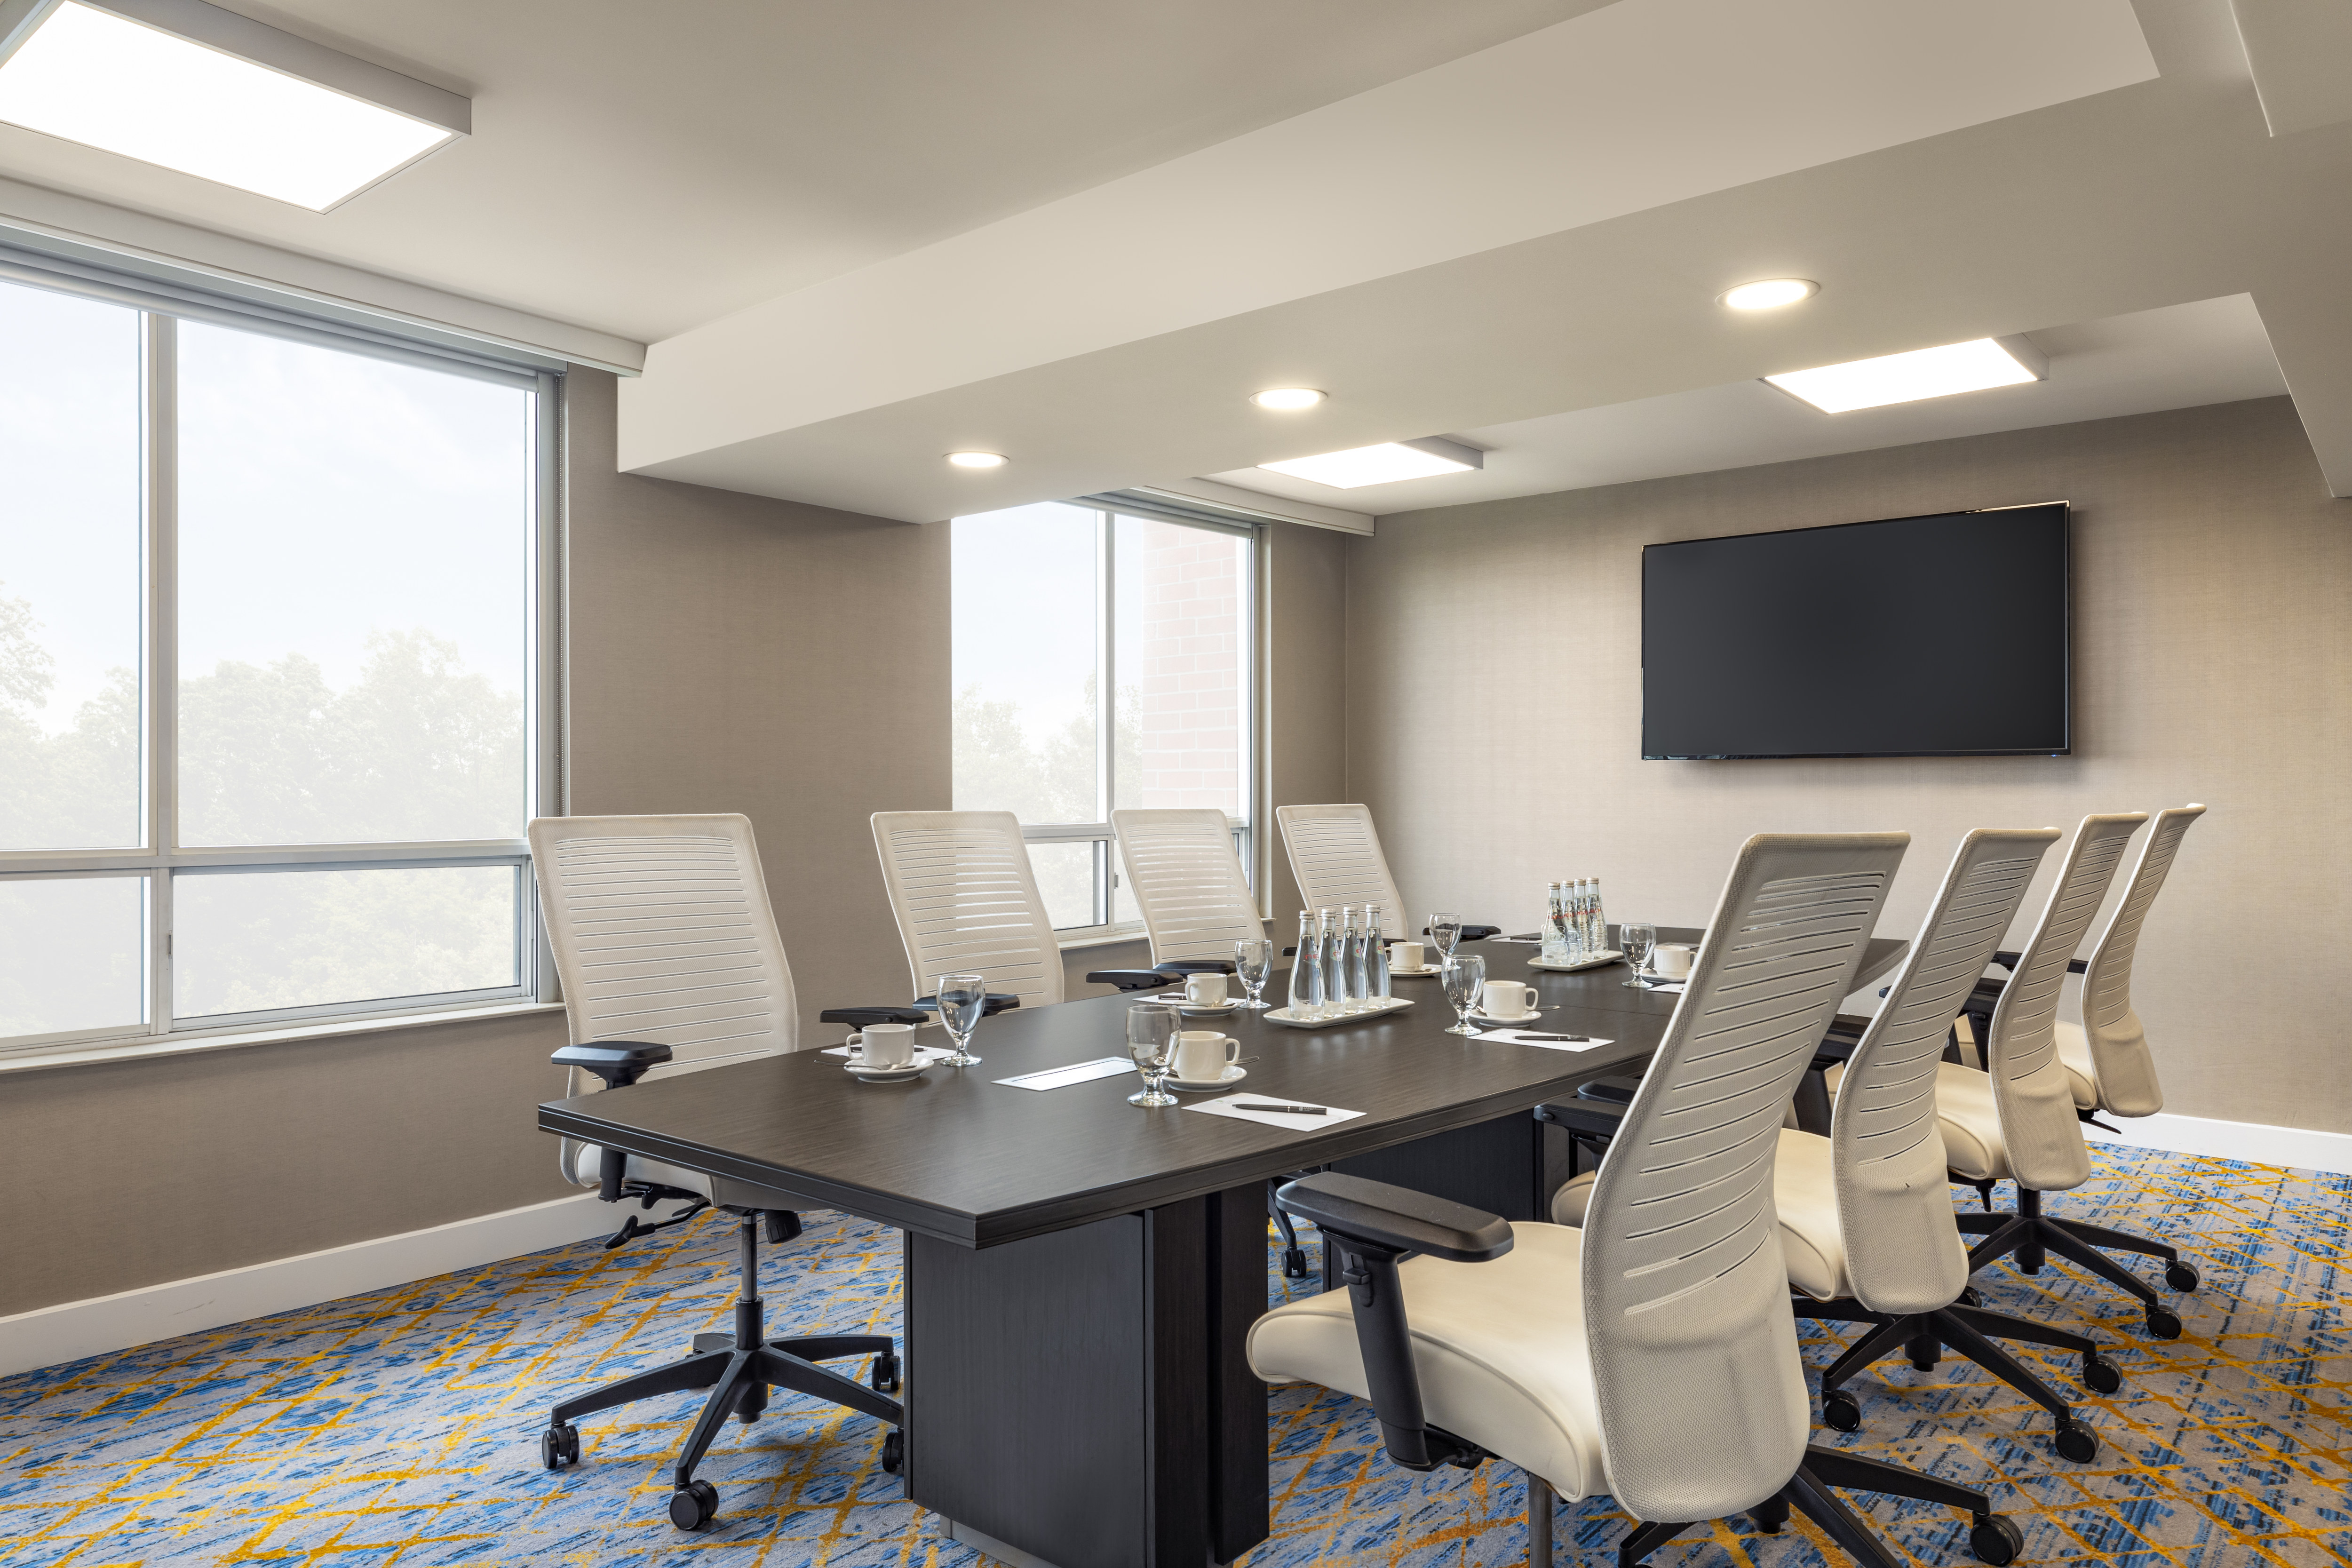 Renforth Meeting Room - Boardroom set up